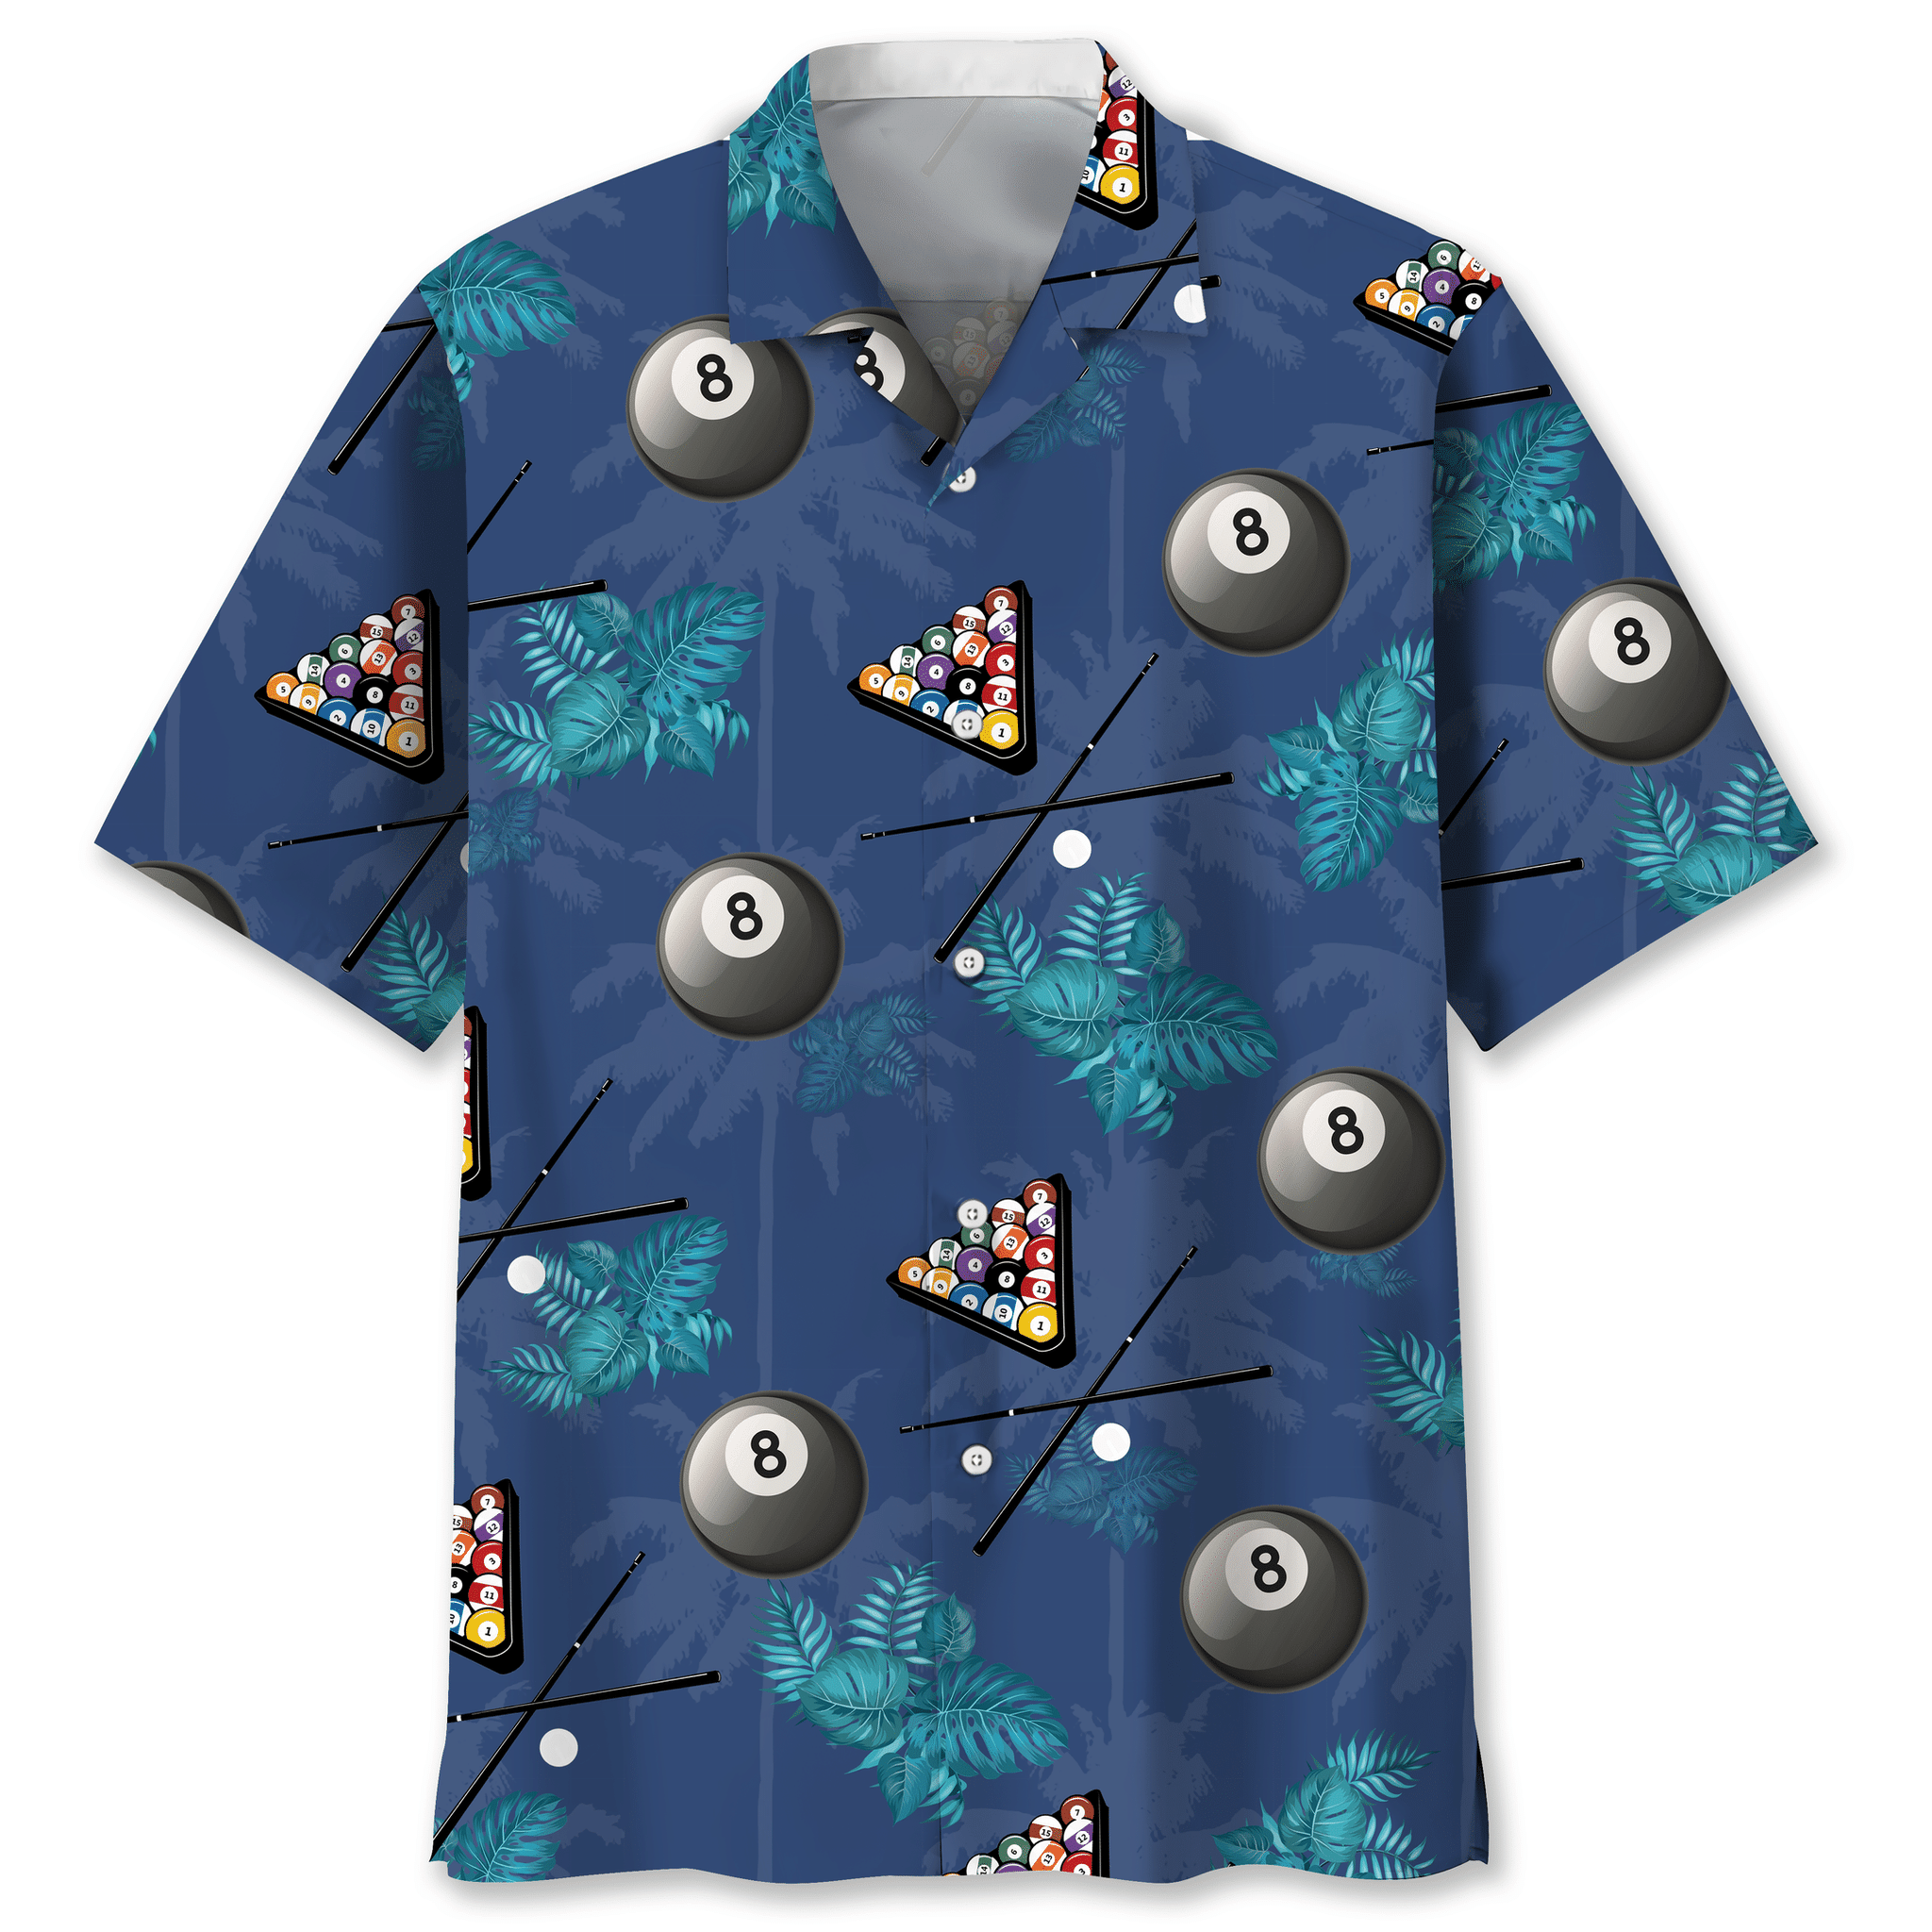 Billiard tropical Hawaiian shirt